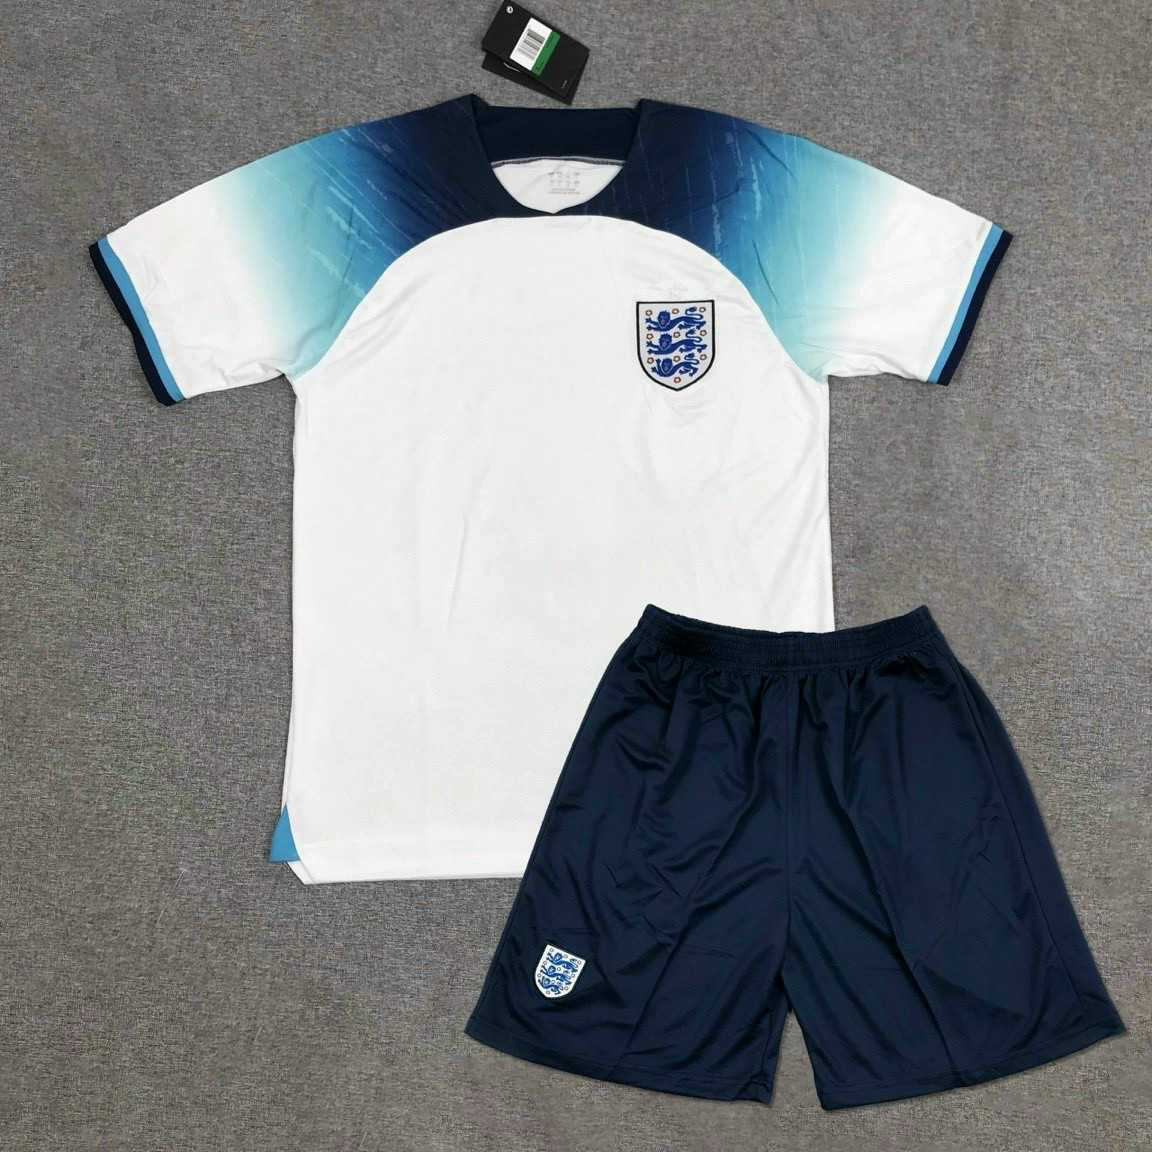 Bộ quần áo đá banh đội tuyển bóng đá hoành gia anh england màu trắng xanh mới nhất mùa world cup 2022 2023 vải thái logo thêu 1